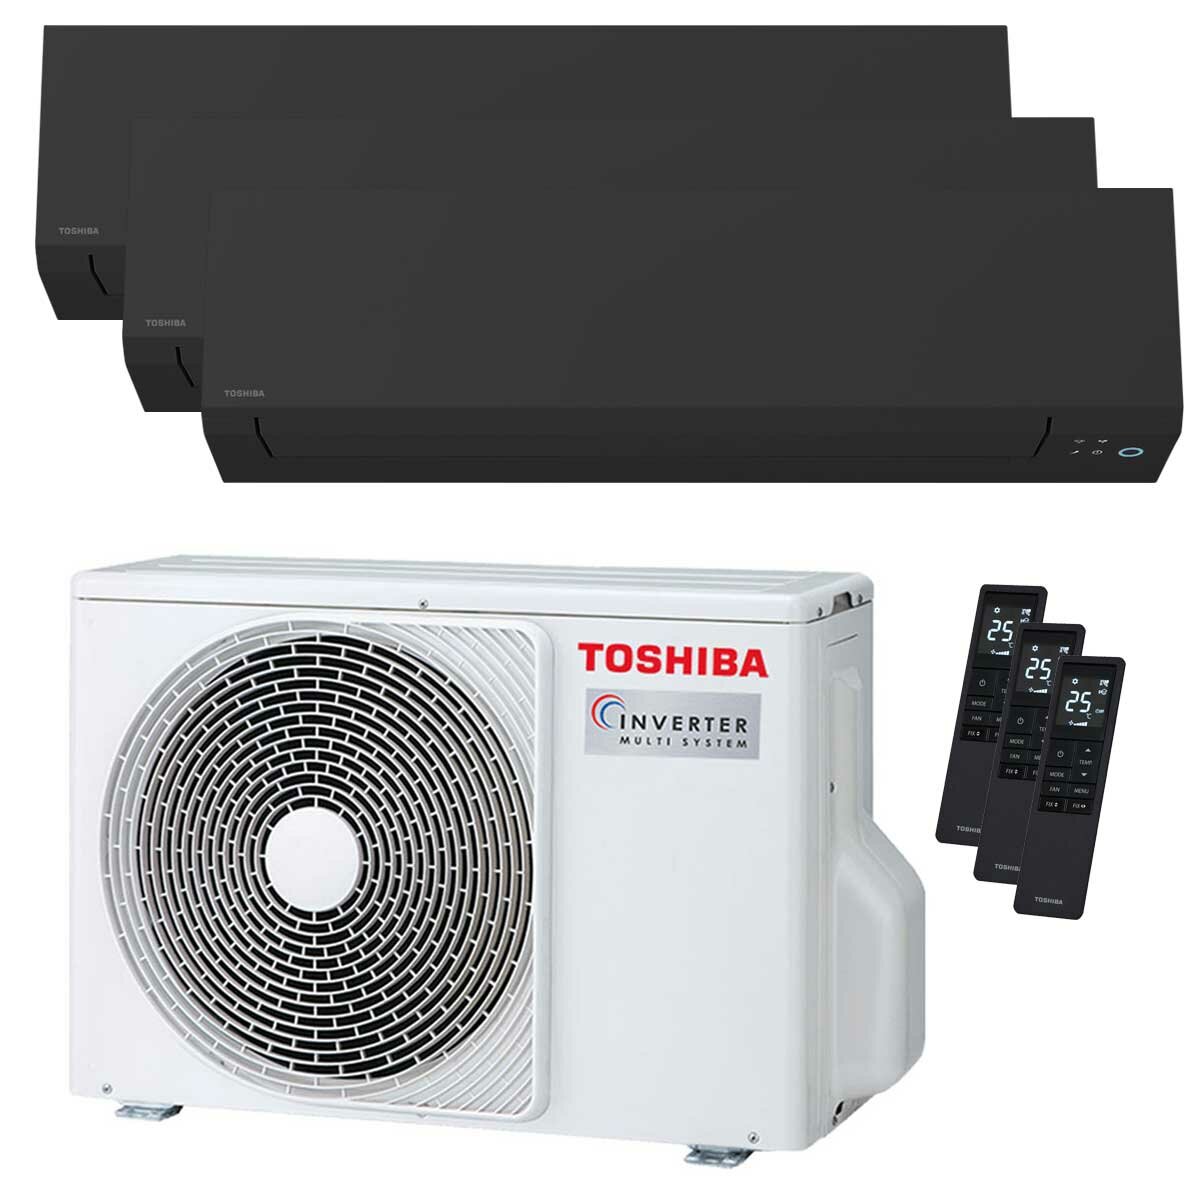 Climatiseur trial split Toshiba SHORAI Edge Black 7000+9000+9000 BTU inverseur A+++ unité extérieure wifi 5,2 kW 